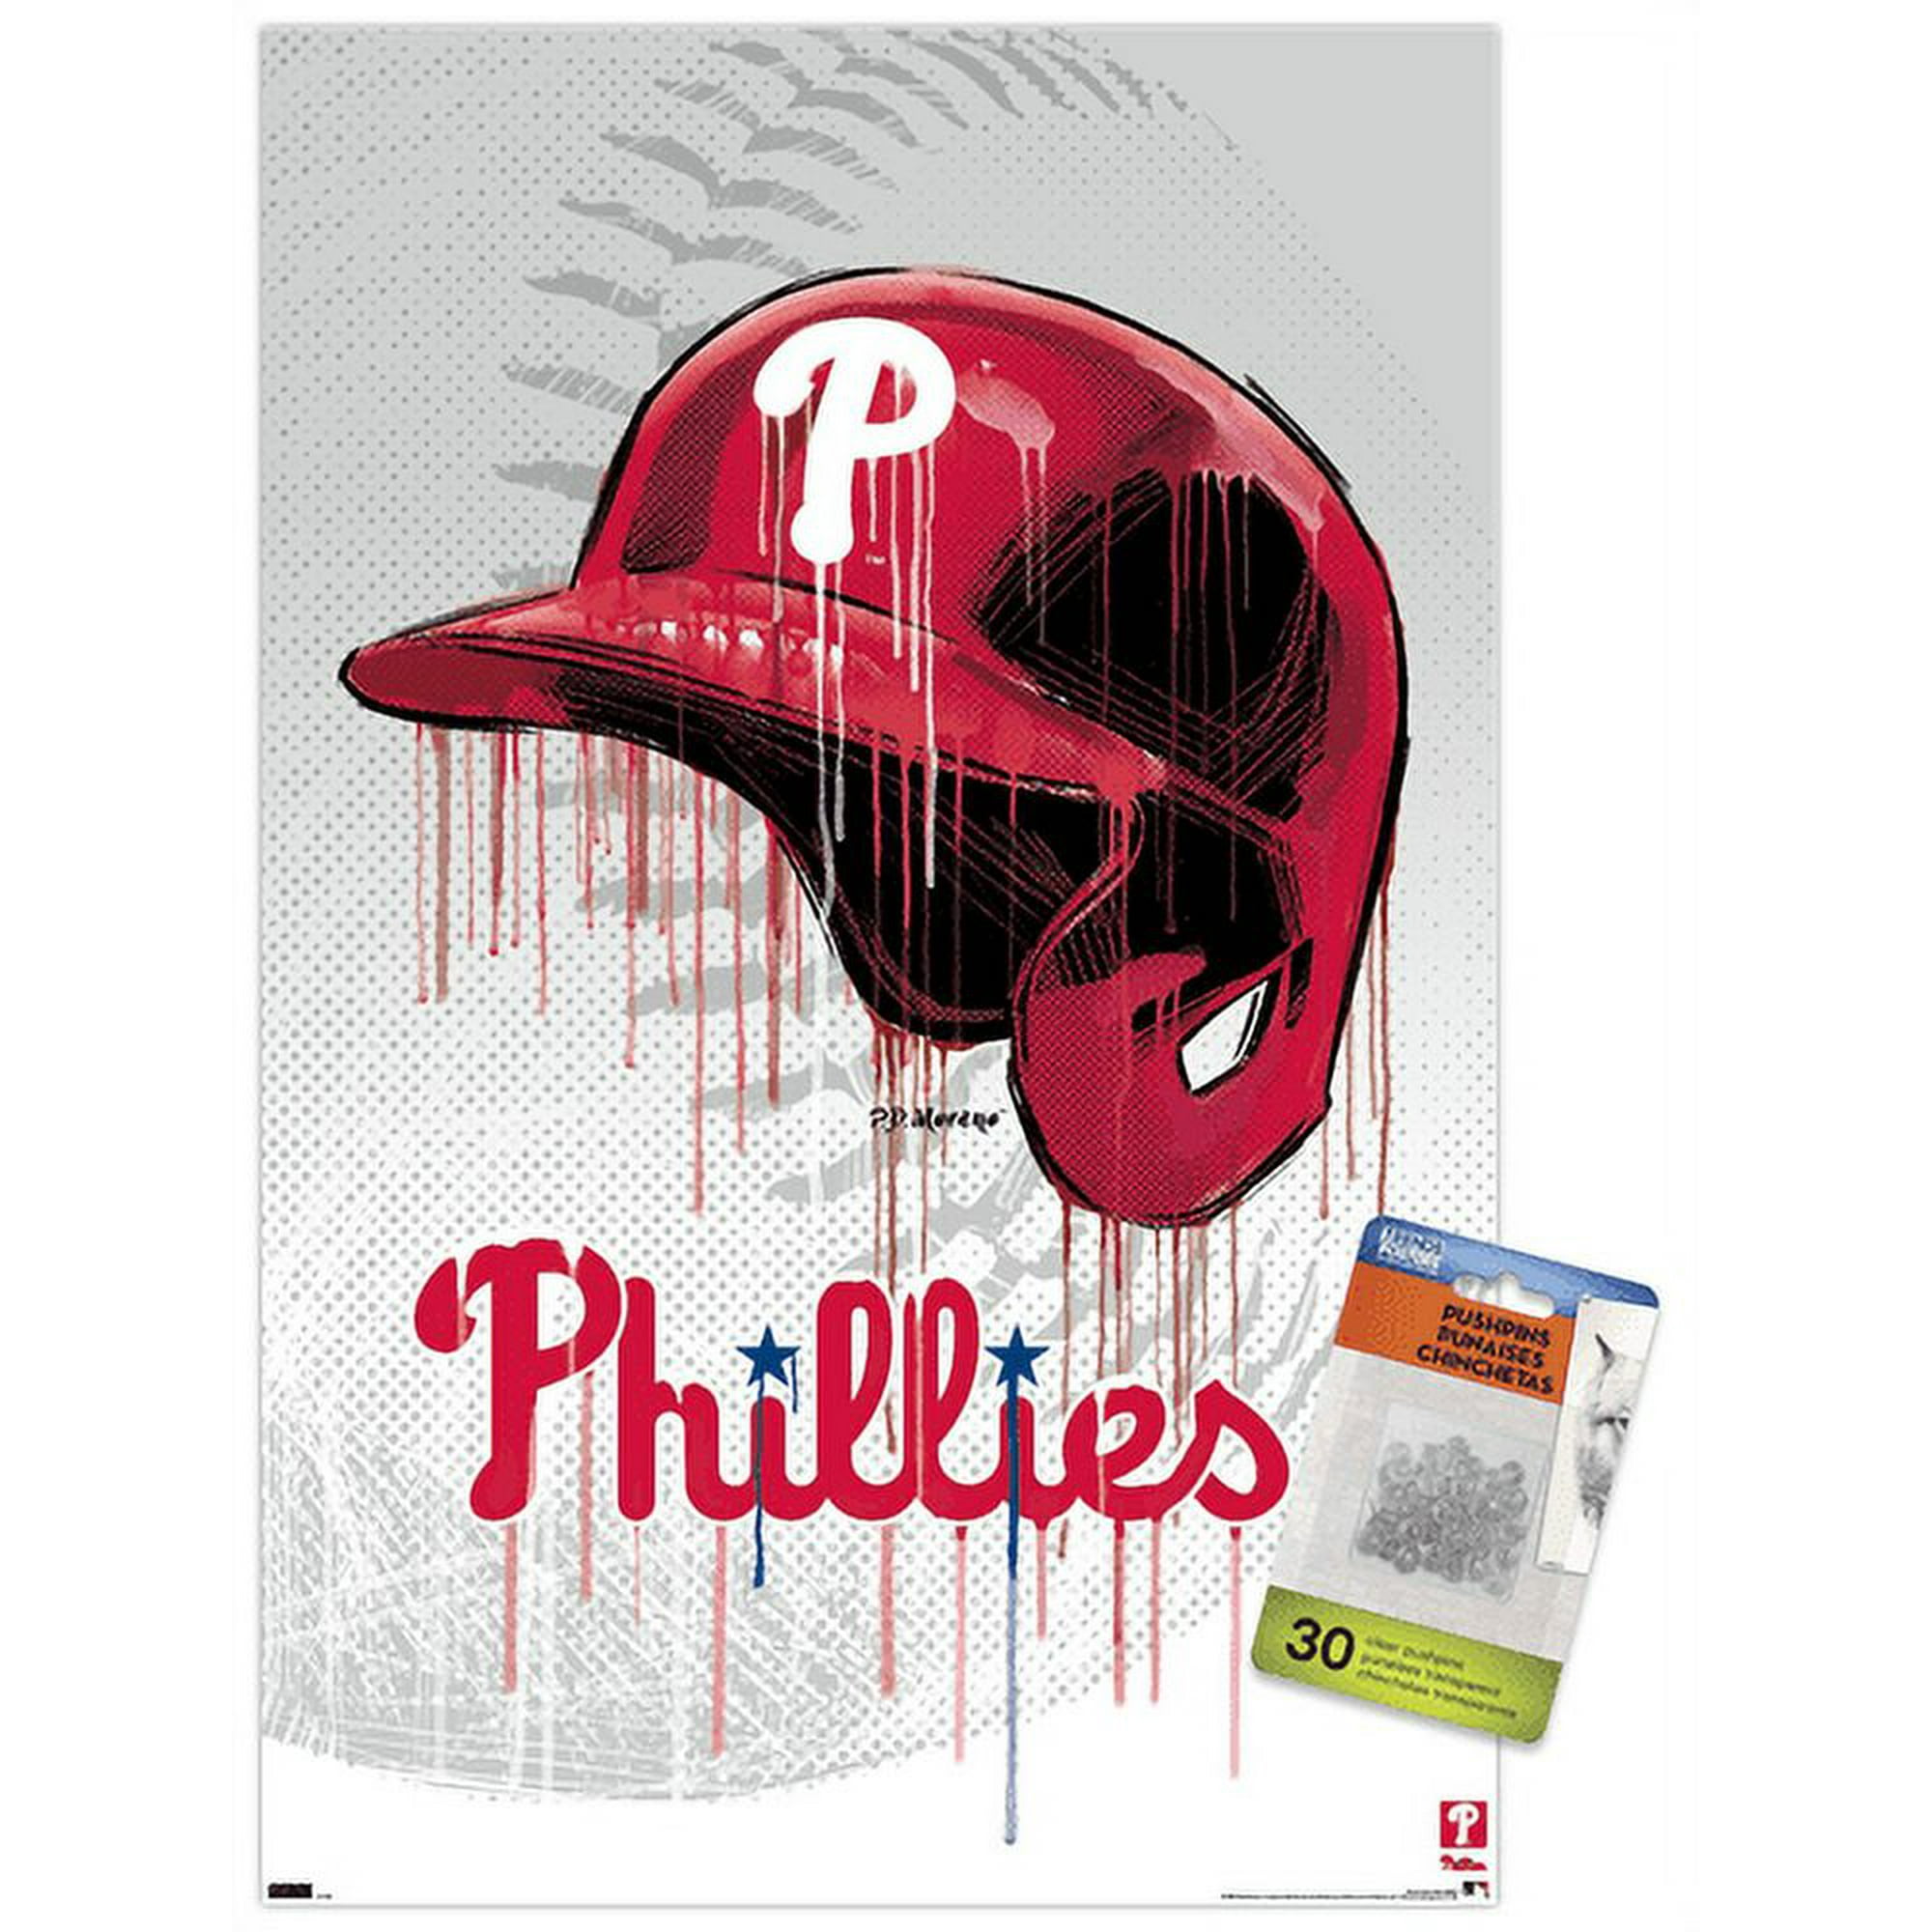 Pin on Phillies baseball